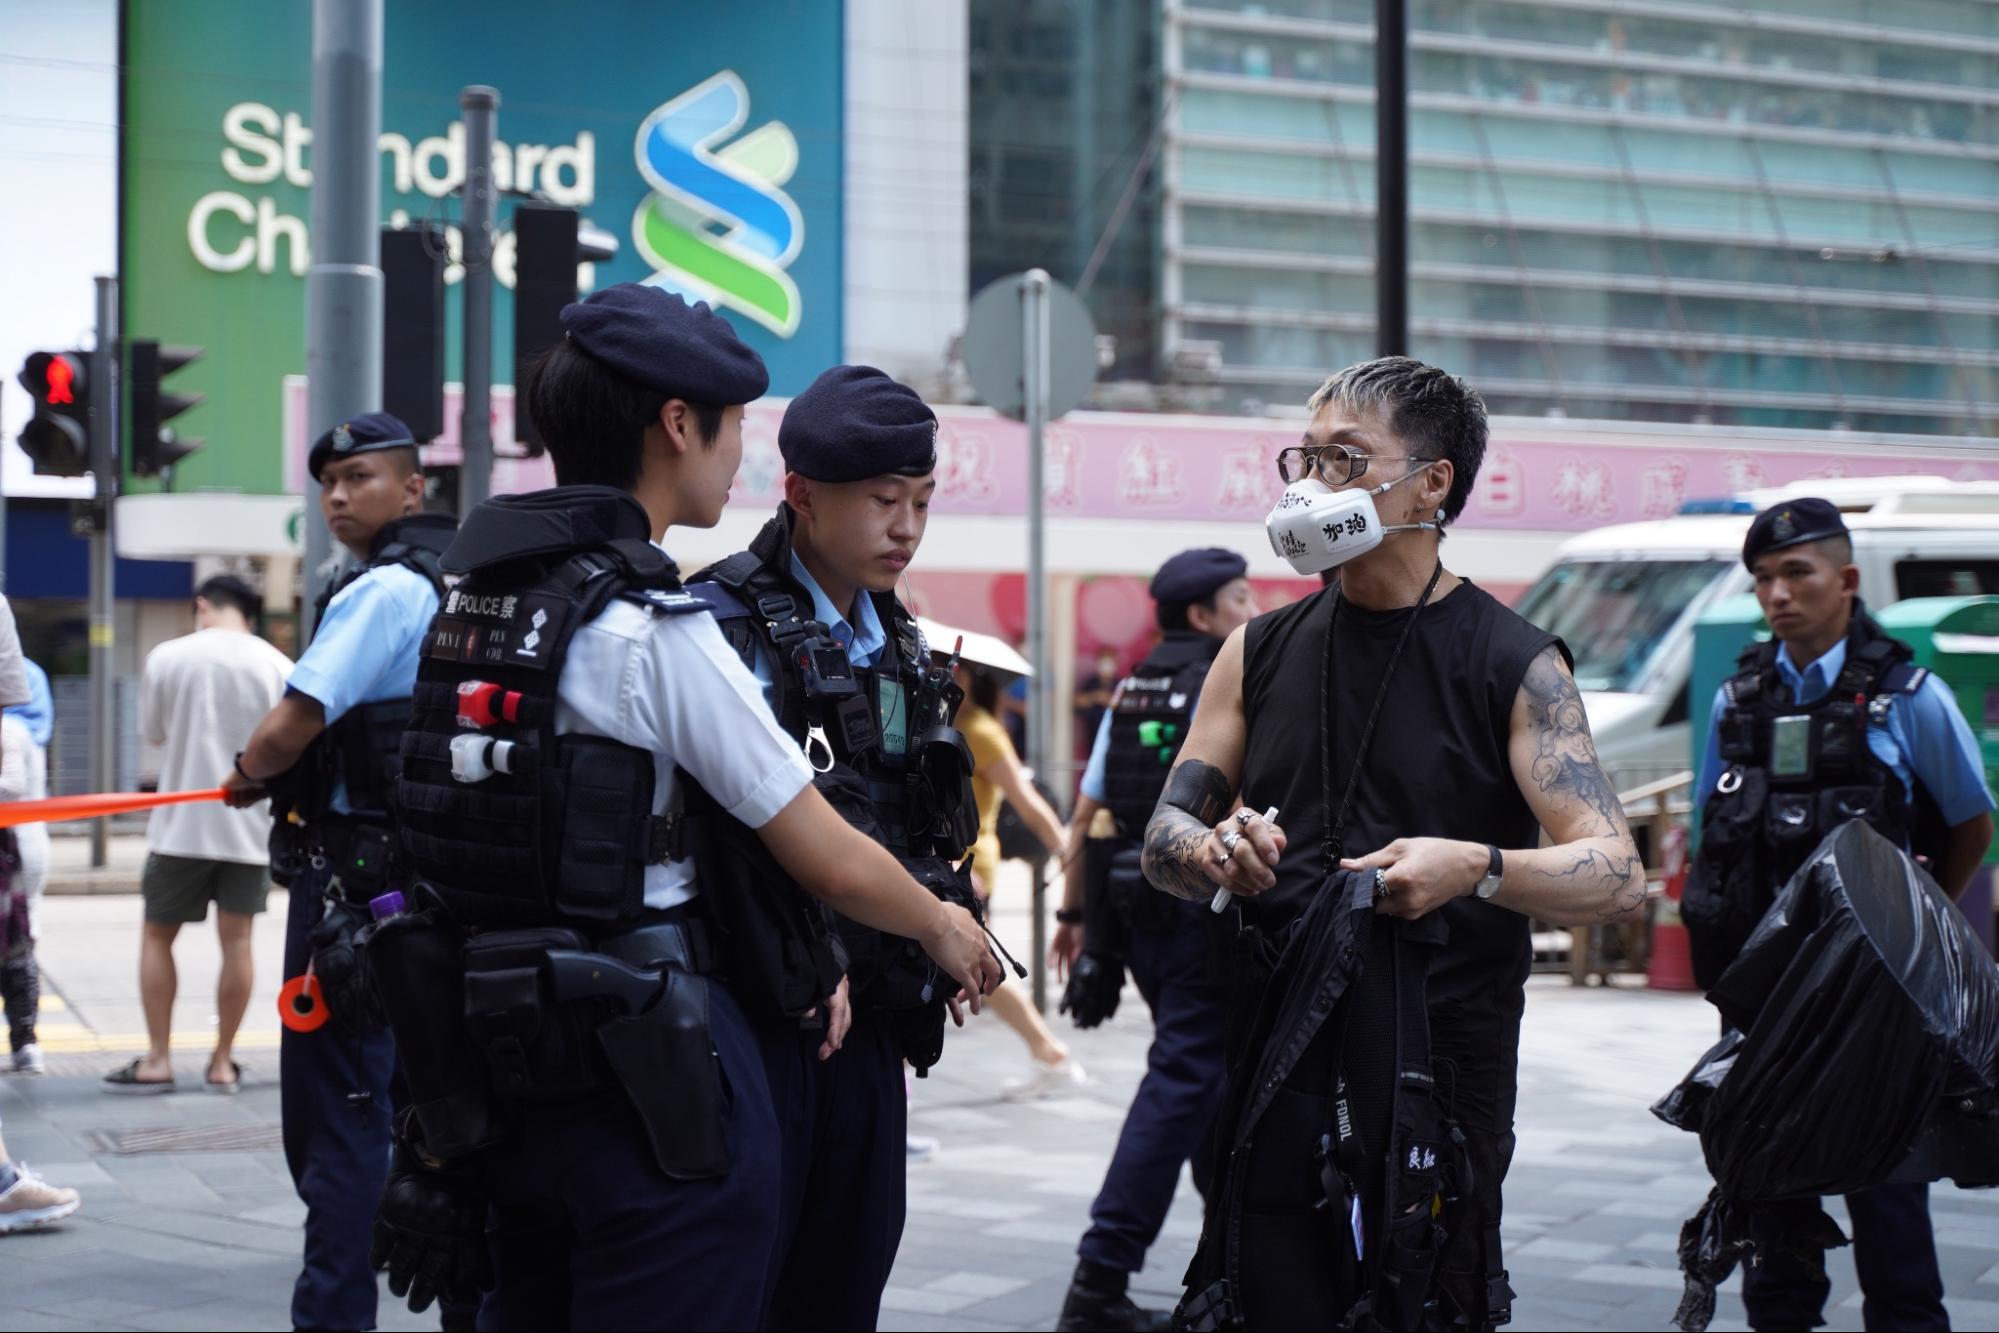 Một người đàn ông mặc một áo phông đen và đeo một chiếc khẩu trang có dòng chữ “Hong Kong Add Oil” đã bị cảnh sát chặn lại và khám xét. (Ảnh: Sung Pi-lung/The Epoch Times)